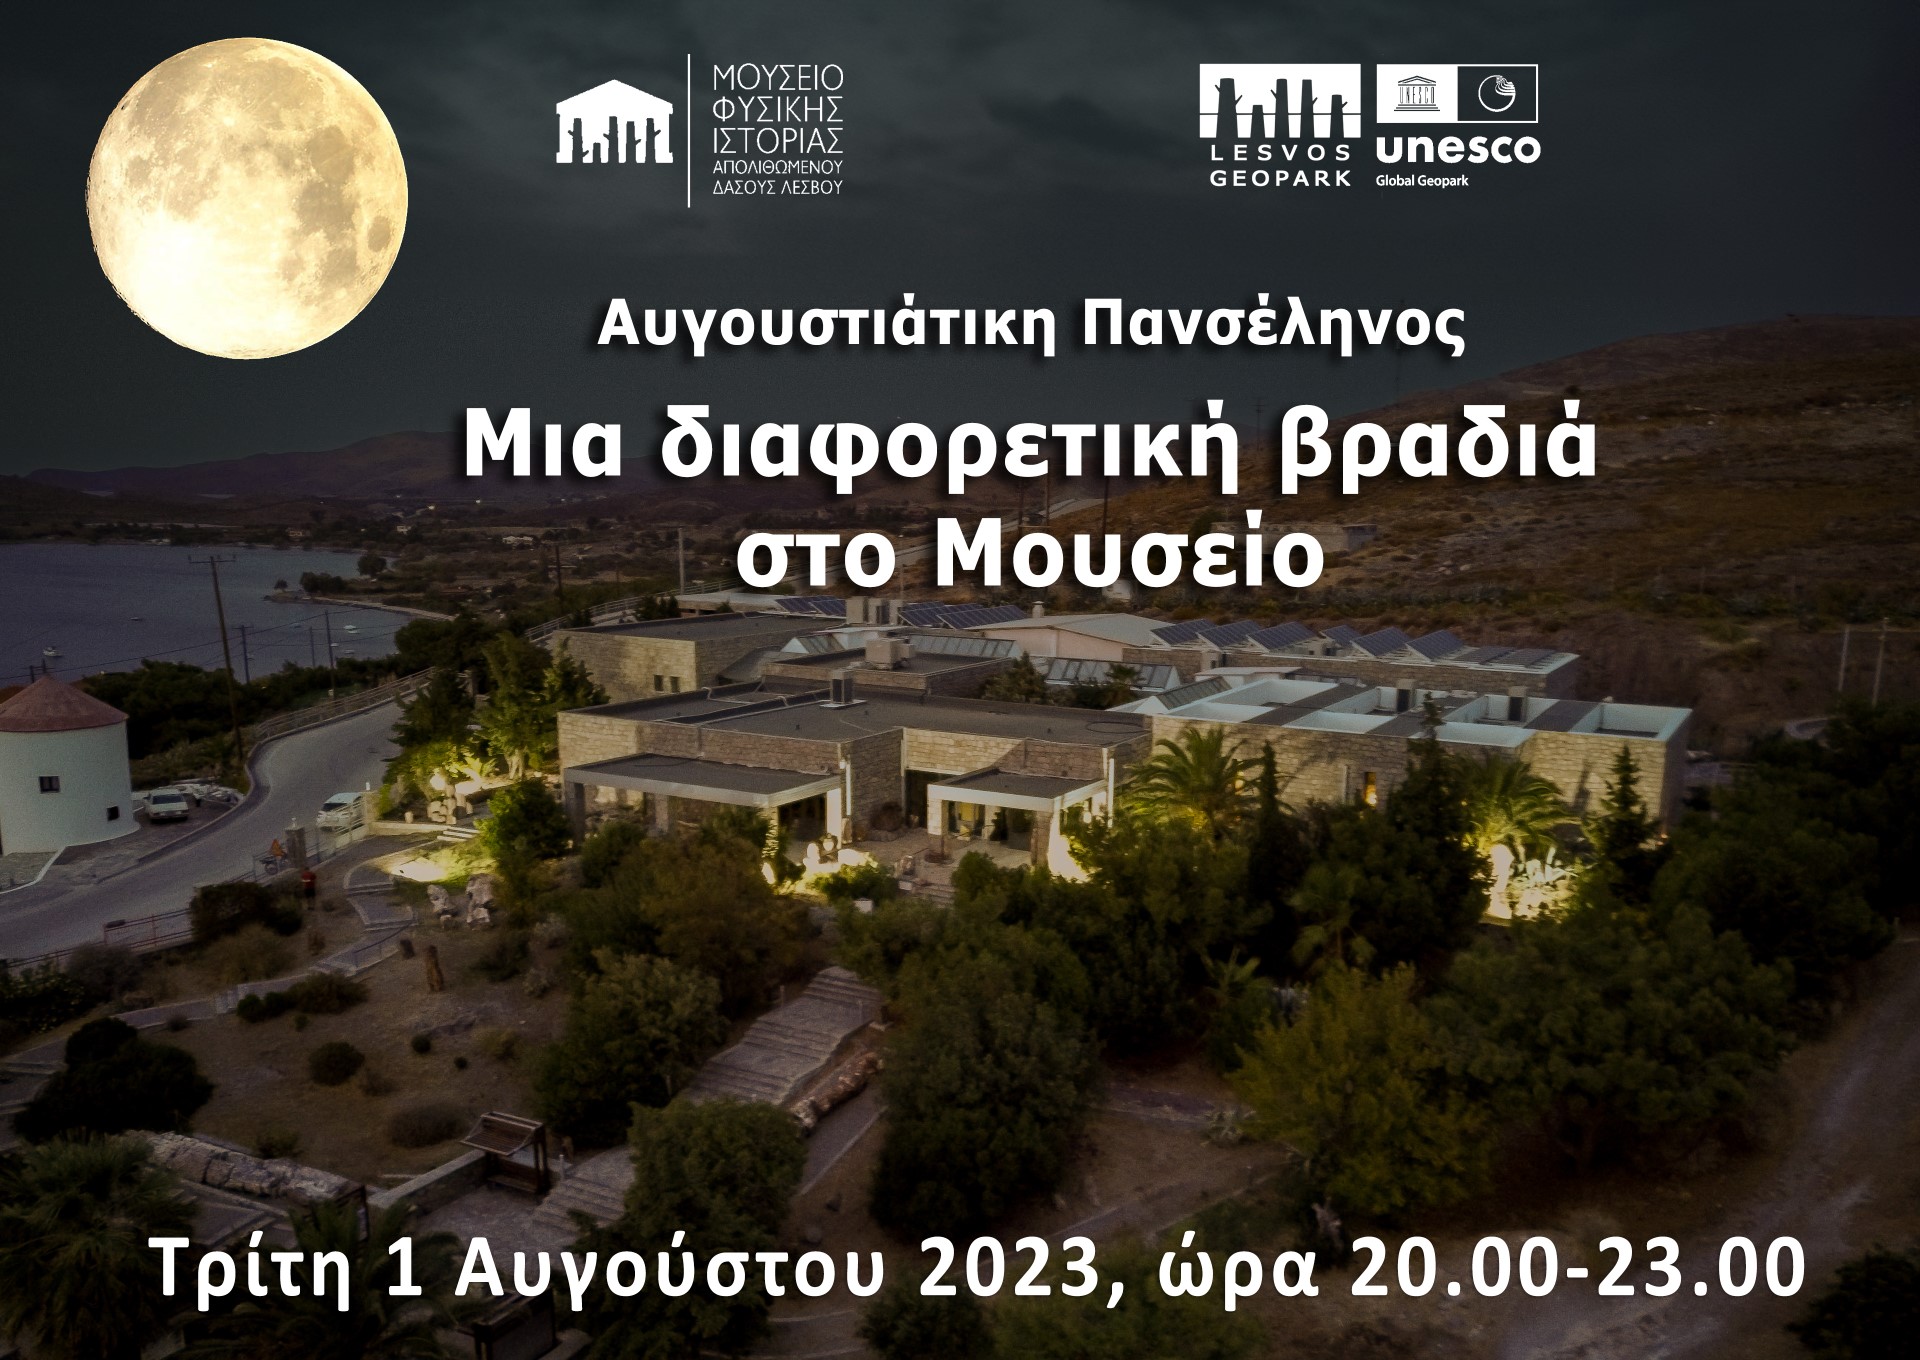 Μυτιλήνη: Μια βραδιά με πανσέληνο στο Μουσείο Απολιθωμένου Δάσους Λέσβου